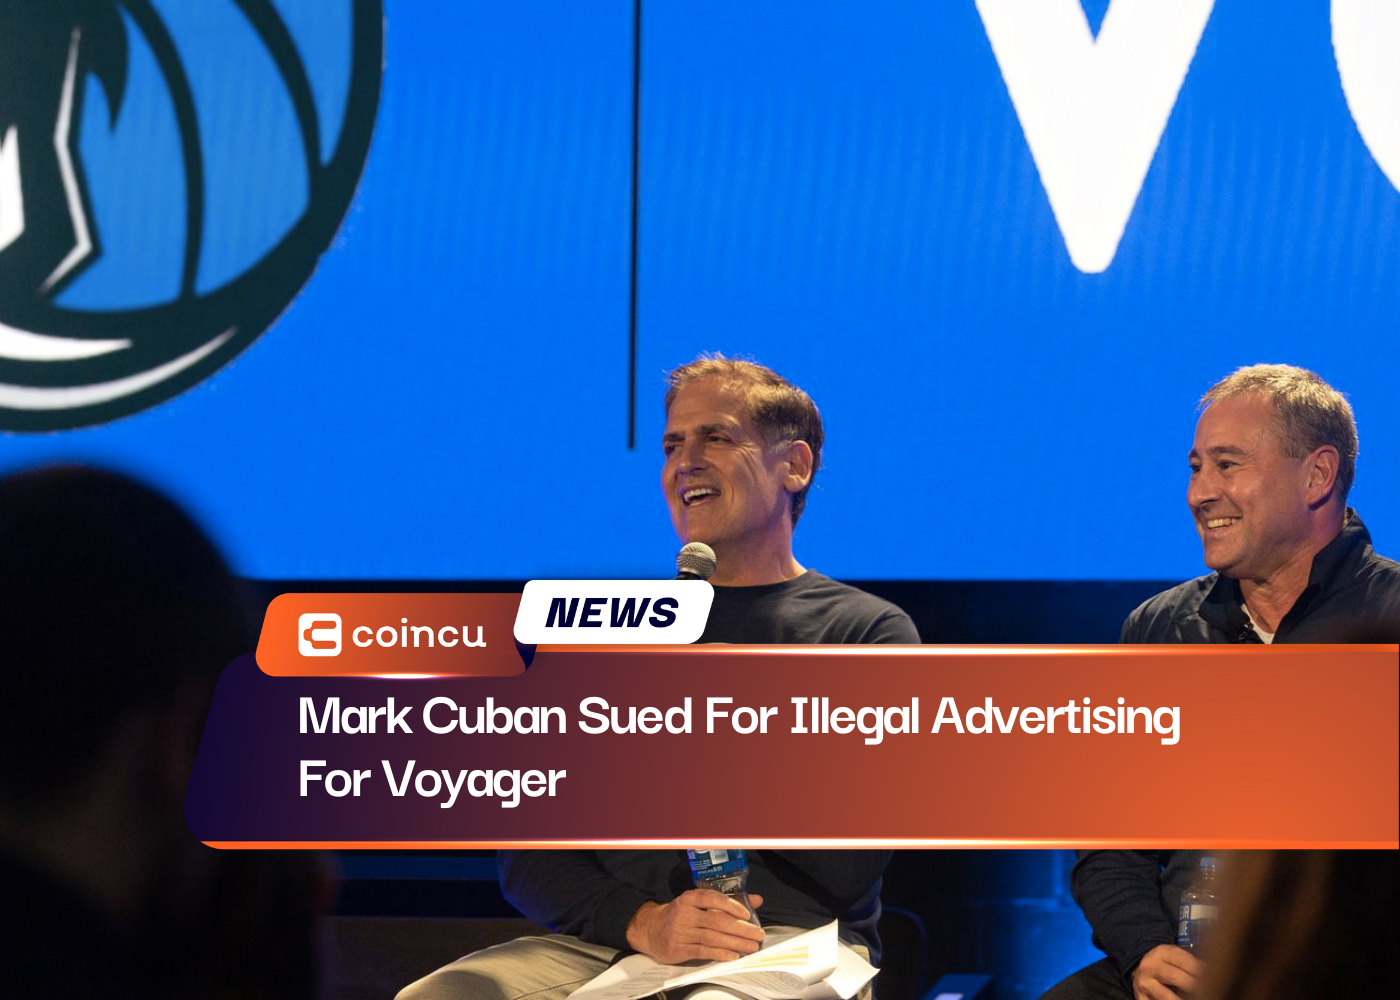 马克·库班 (Mark Cuban) 因为 Voyager 进行非法广告而被起诉